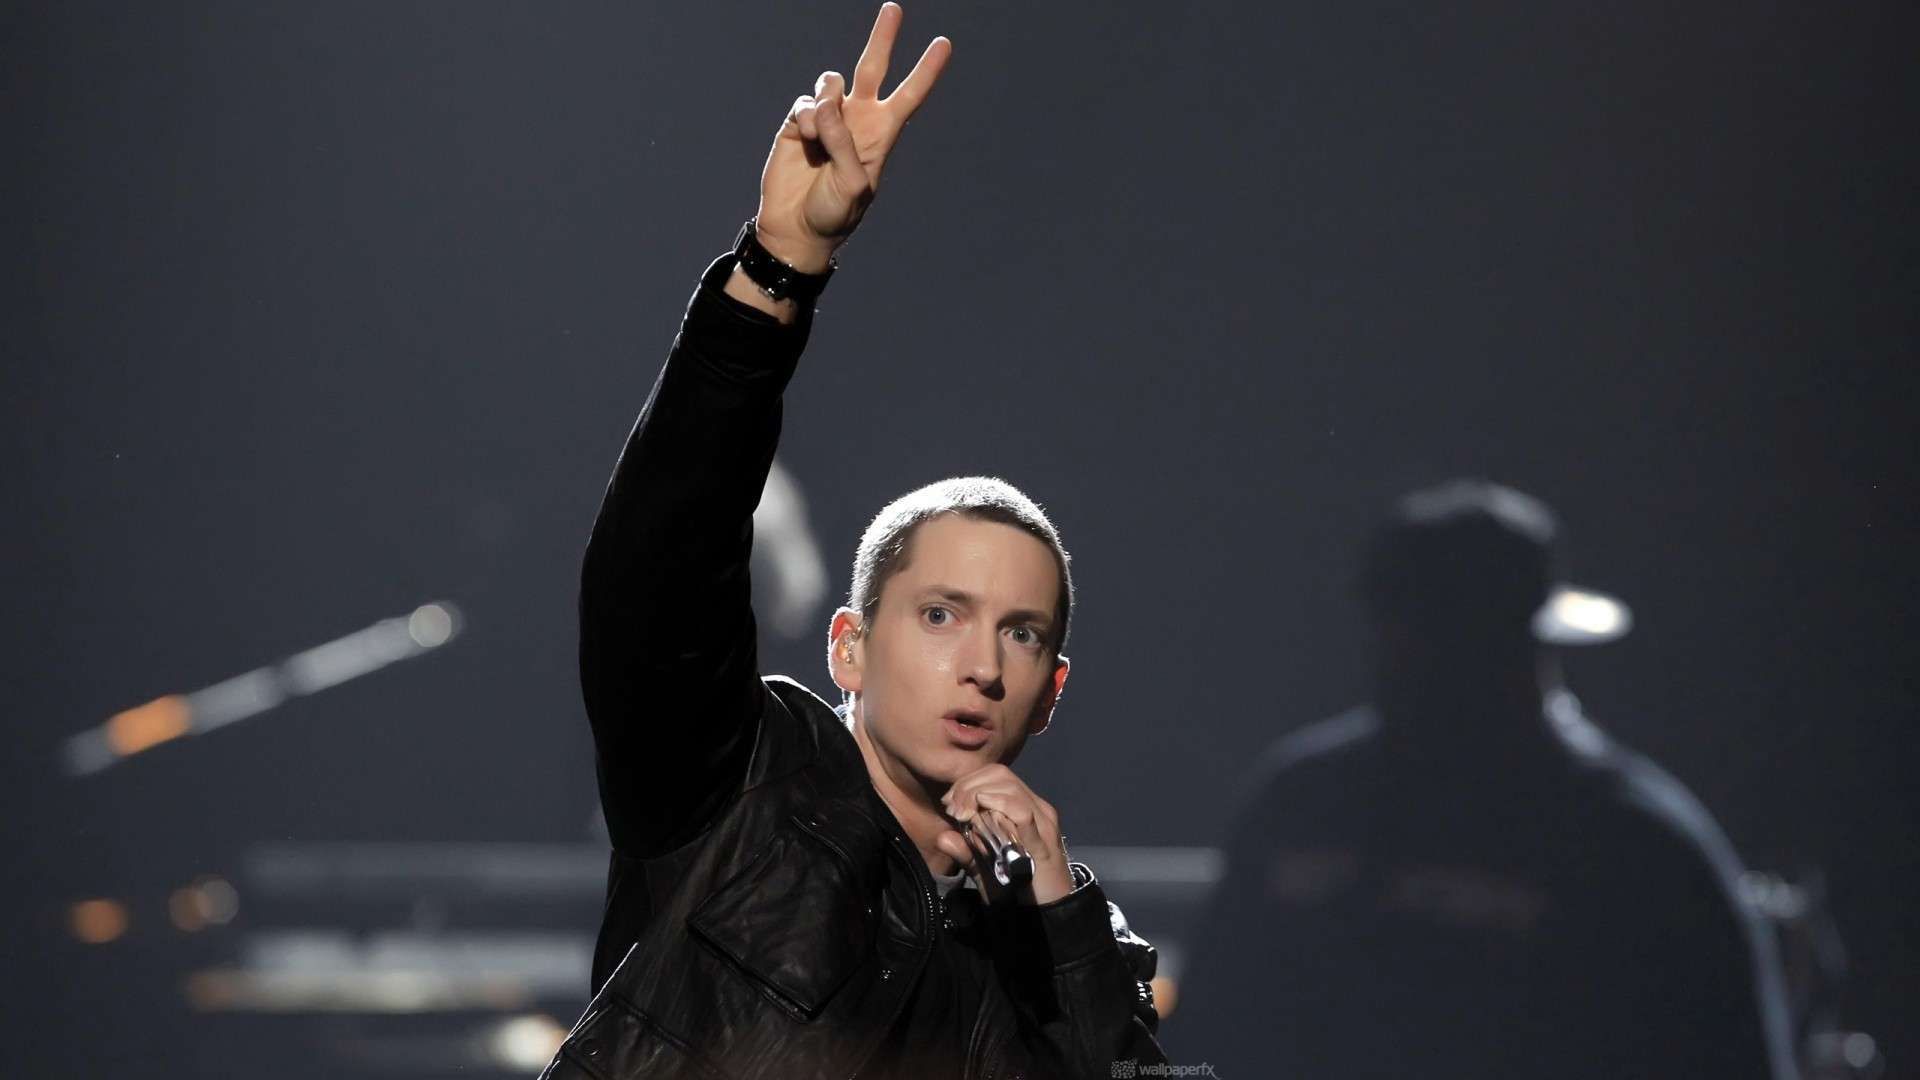 Eminem HD Wallpapers 1080p - WallpaperSafari